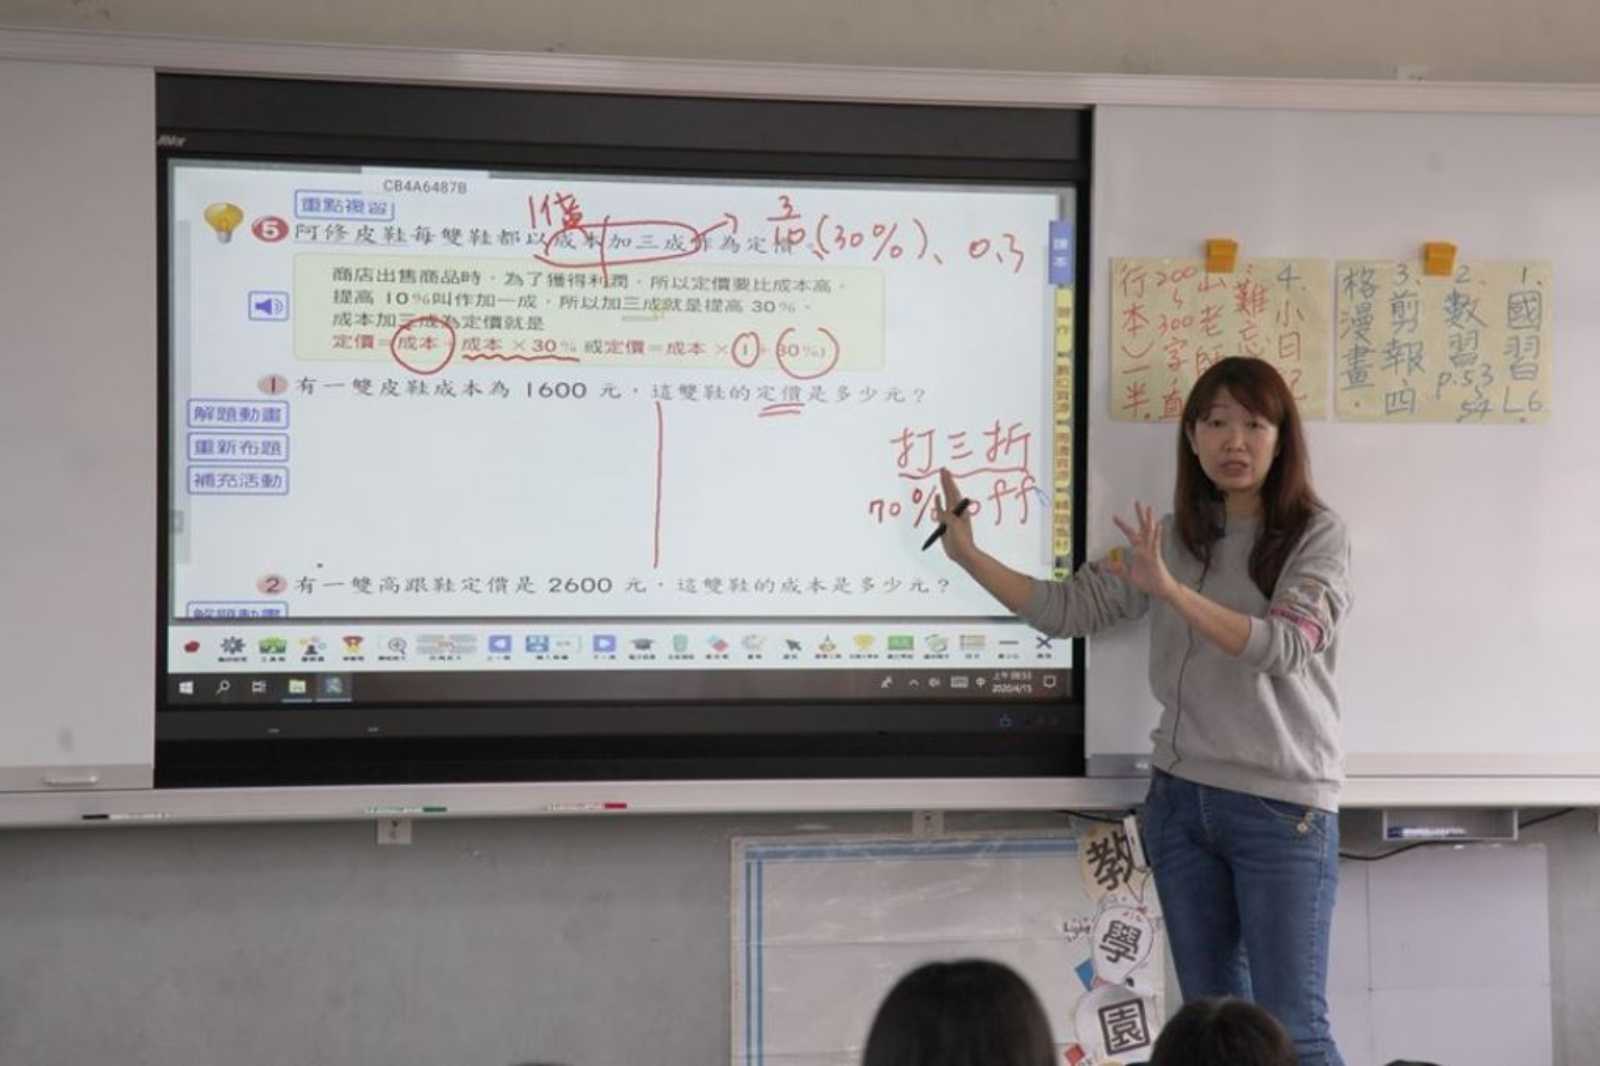 「數位大黑板」能輔助教學、提升師生課堂互動。圖片來源：新竹縣政府